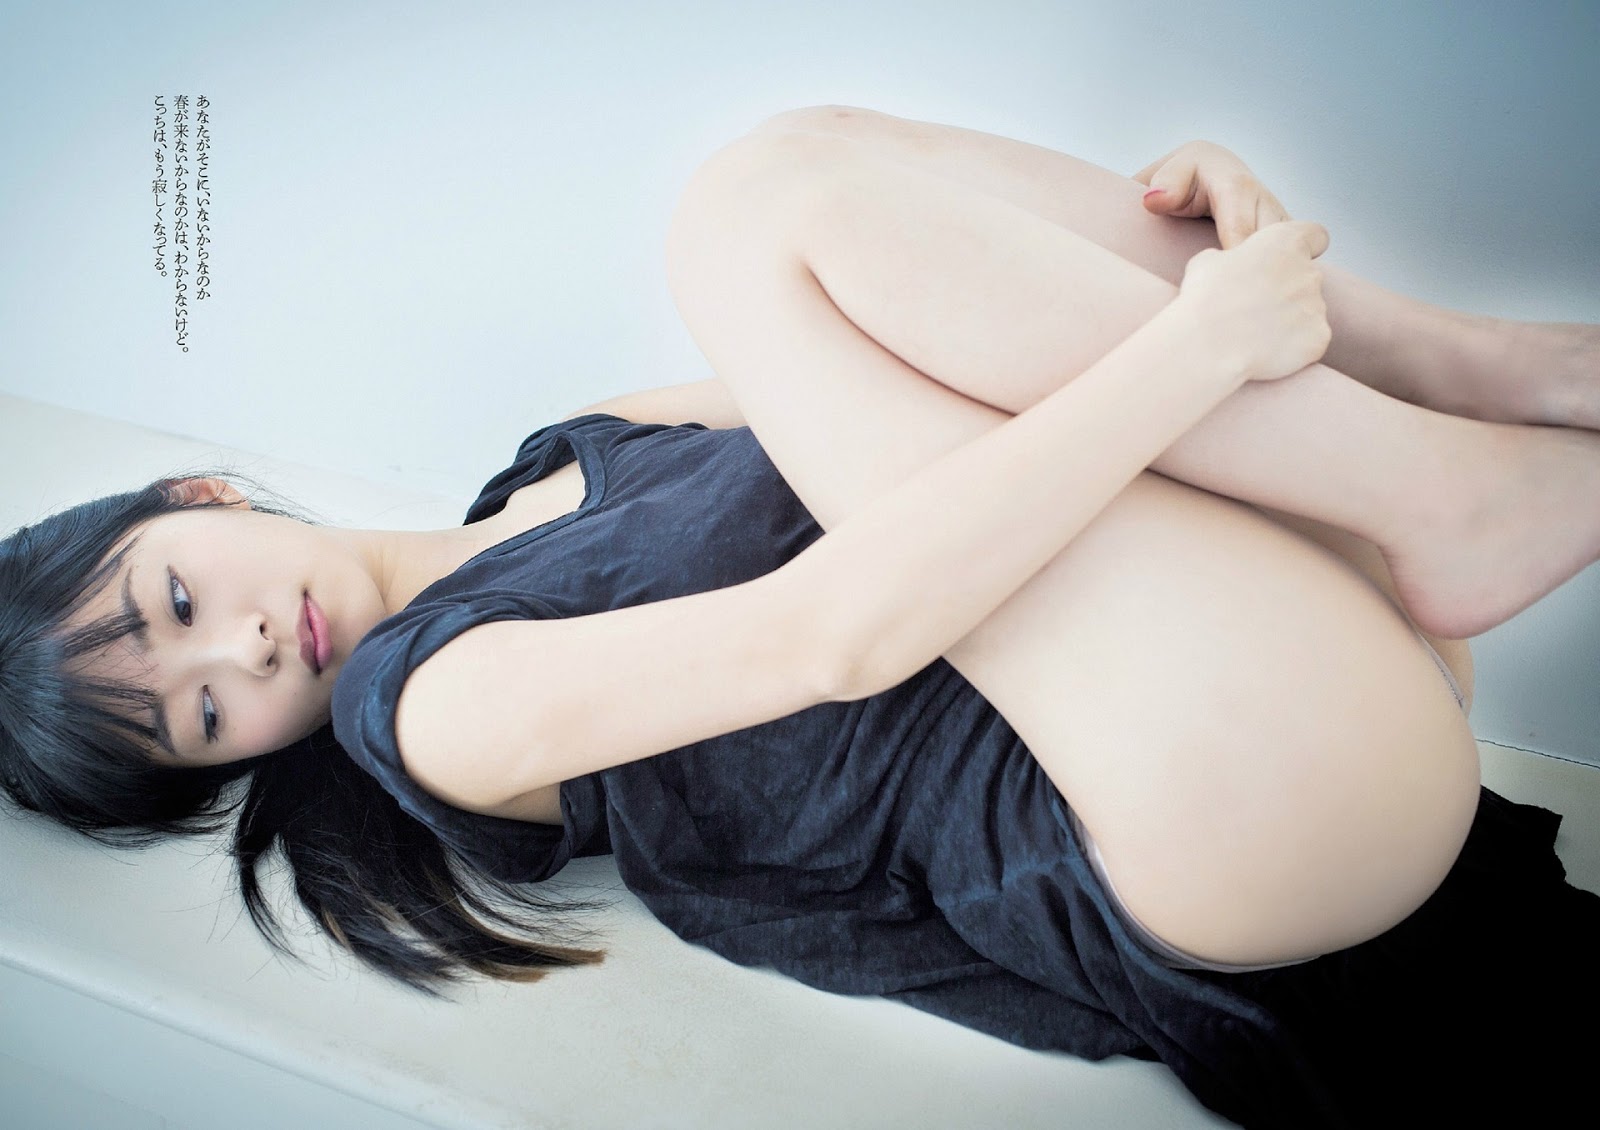 Hot Sexy Beauty Sashihara Rino 指原莉乃weekly Playboy March 14 Photos